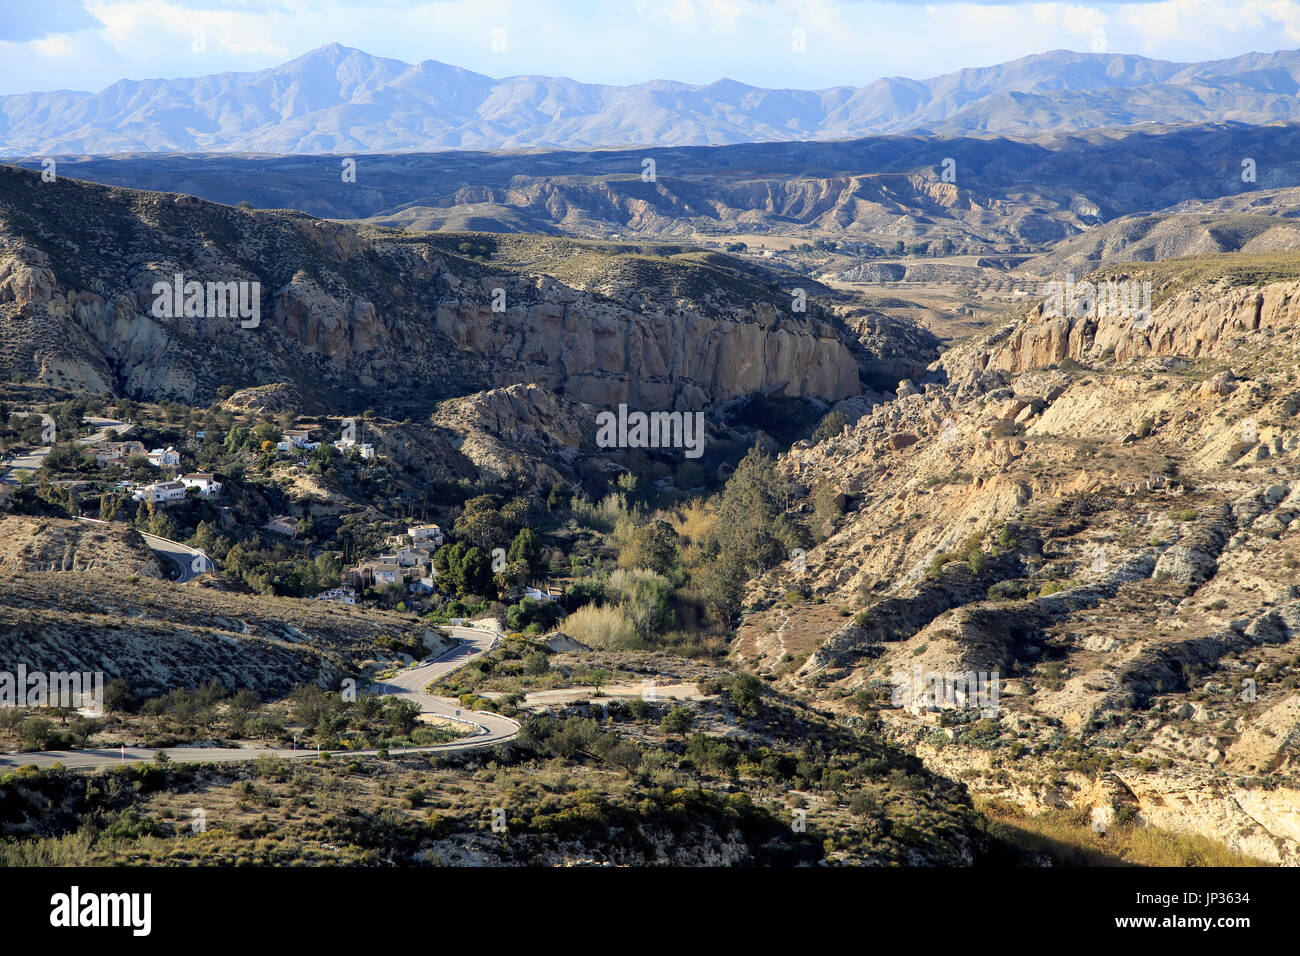 Limestone desert landscape, Los Molinos del Río Aguas, Paraje Natural de Karst en Yesos, Sorbas, Almeria, Spain Stock Photo